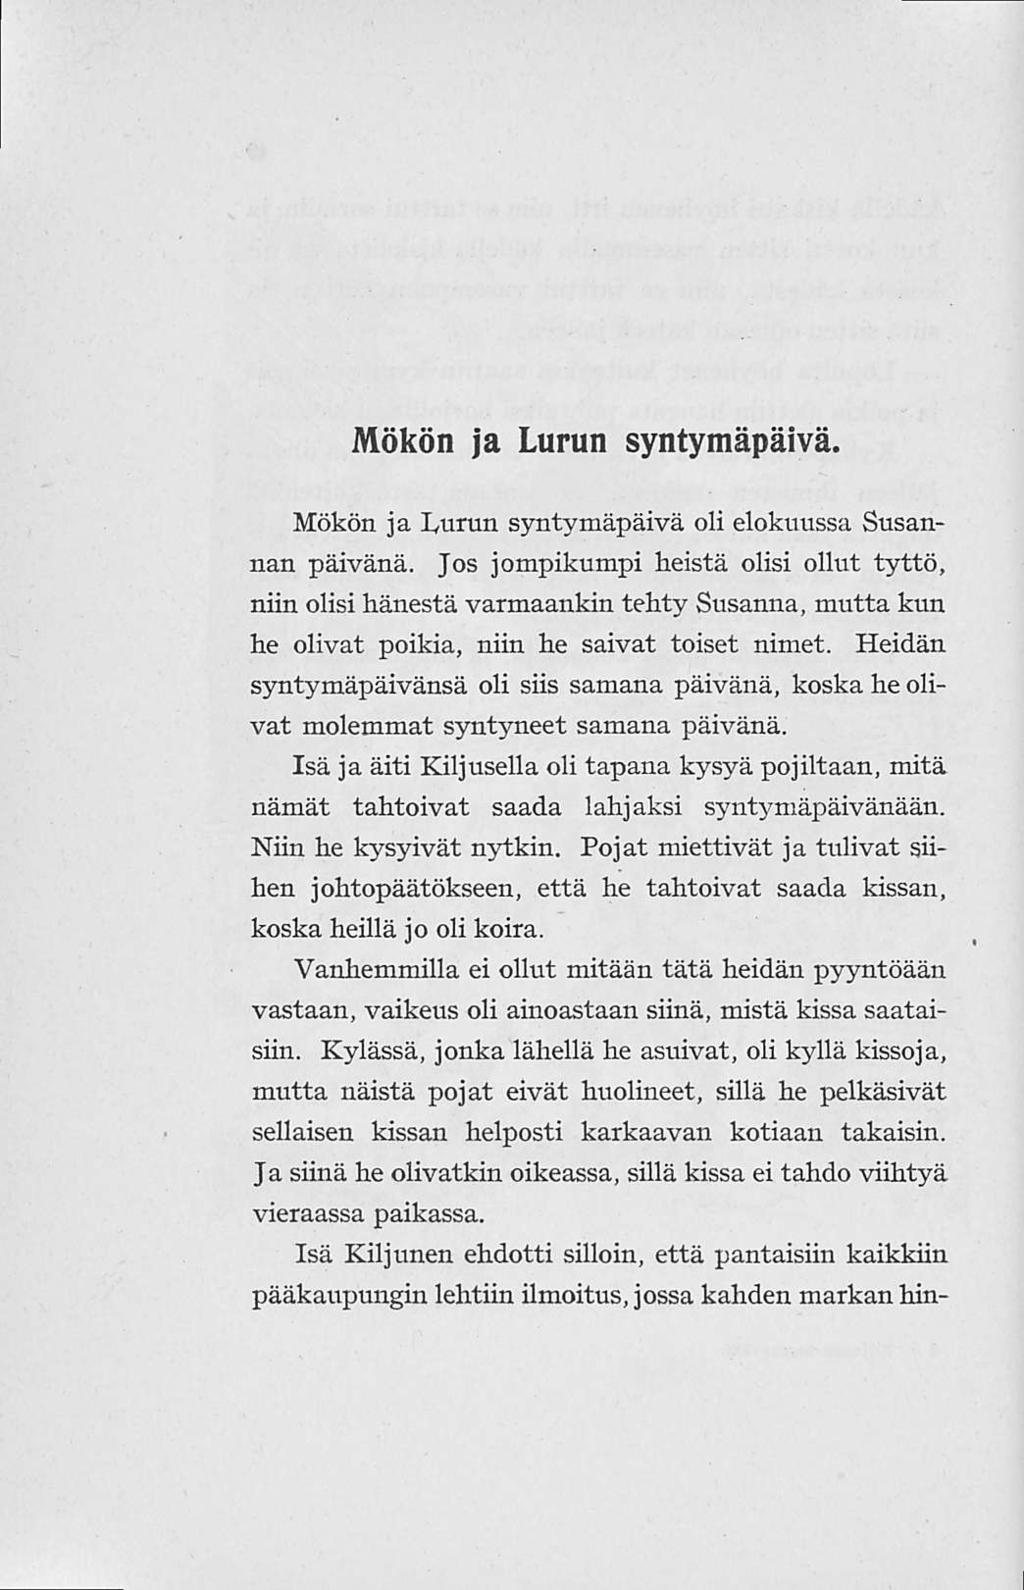 Mökön ja Lurun syntymäpäivä. Mökön ja Lurun syntymäpäivä oli elokuussa Susannan päivänä.